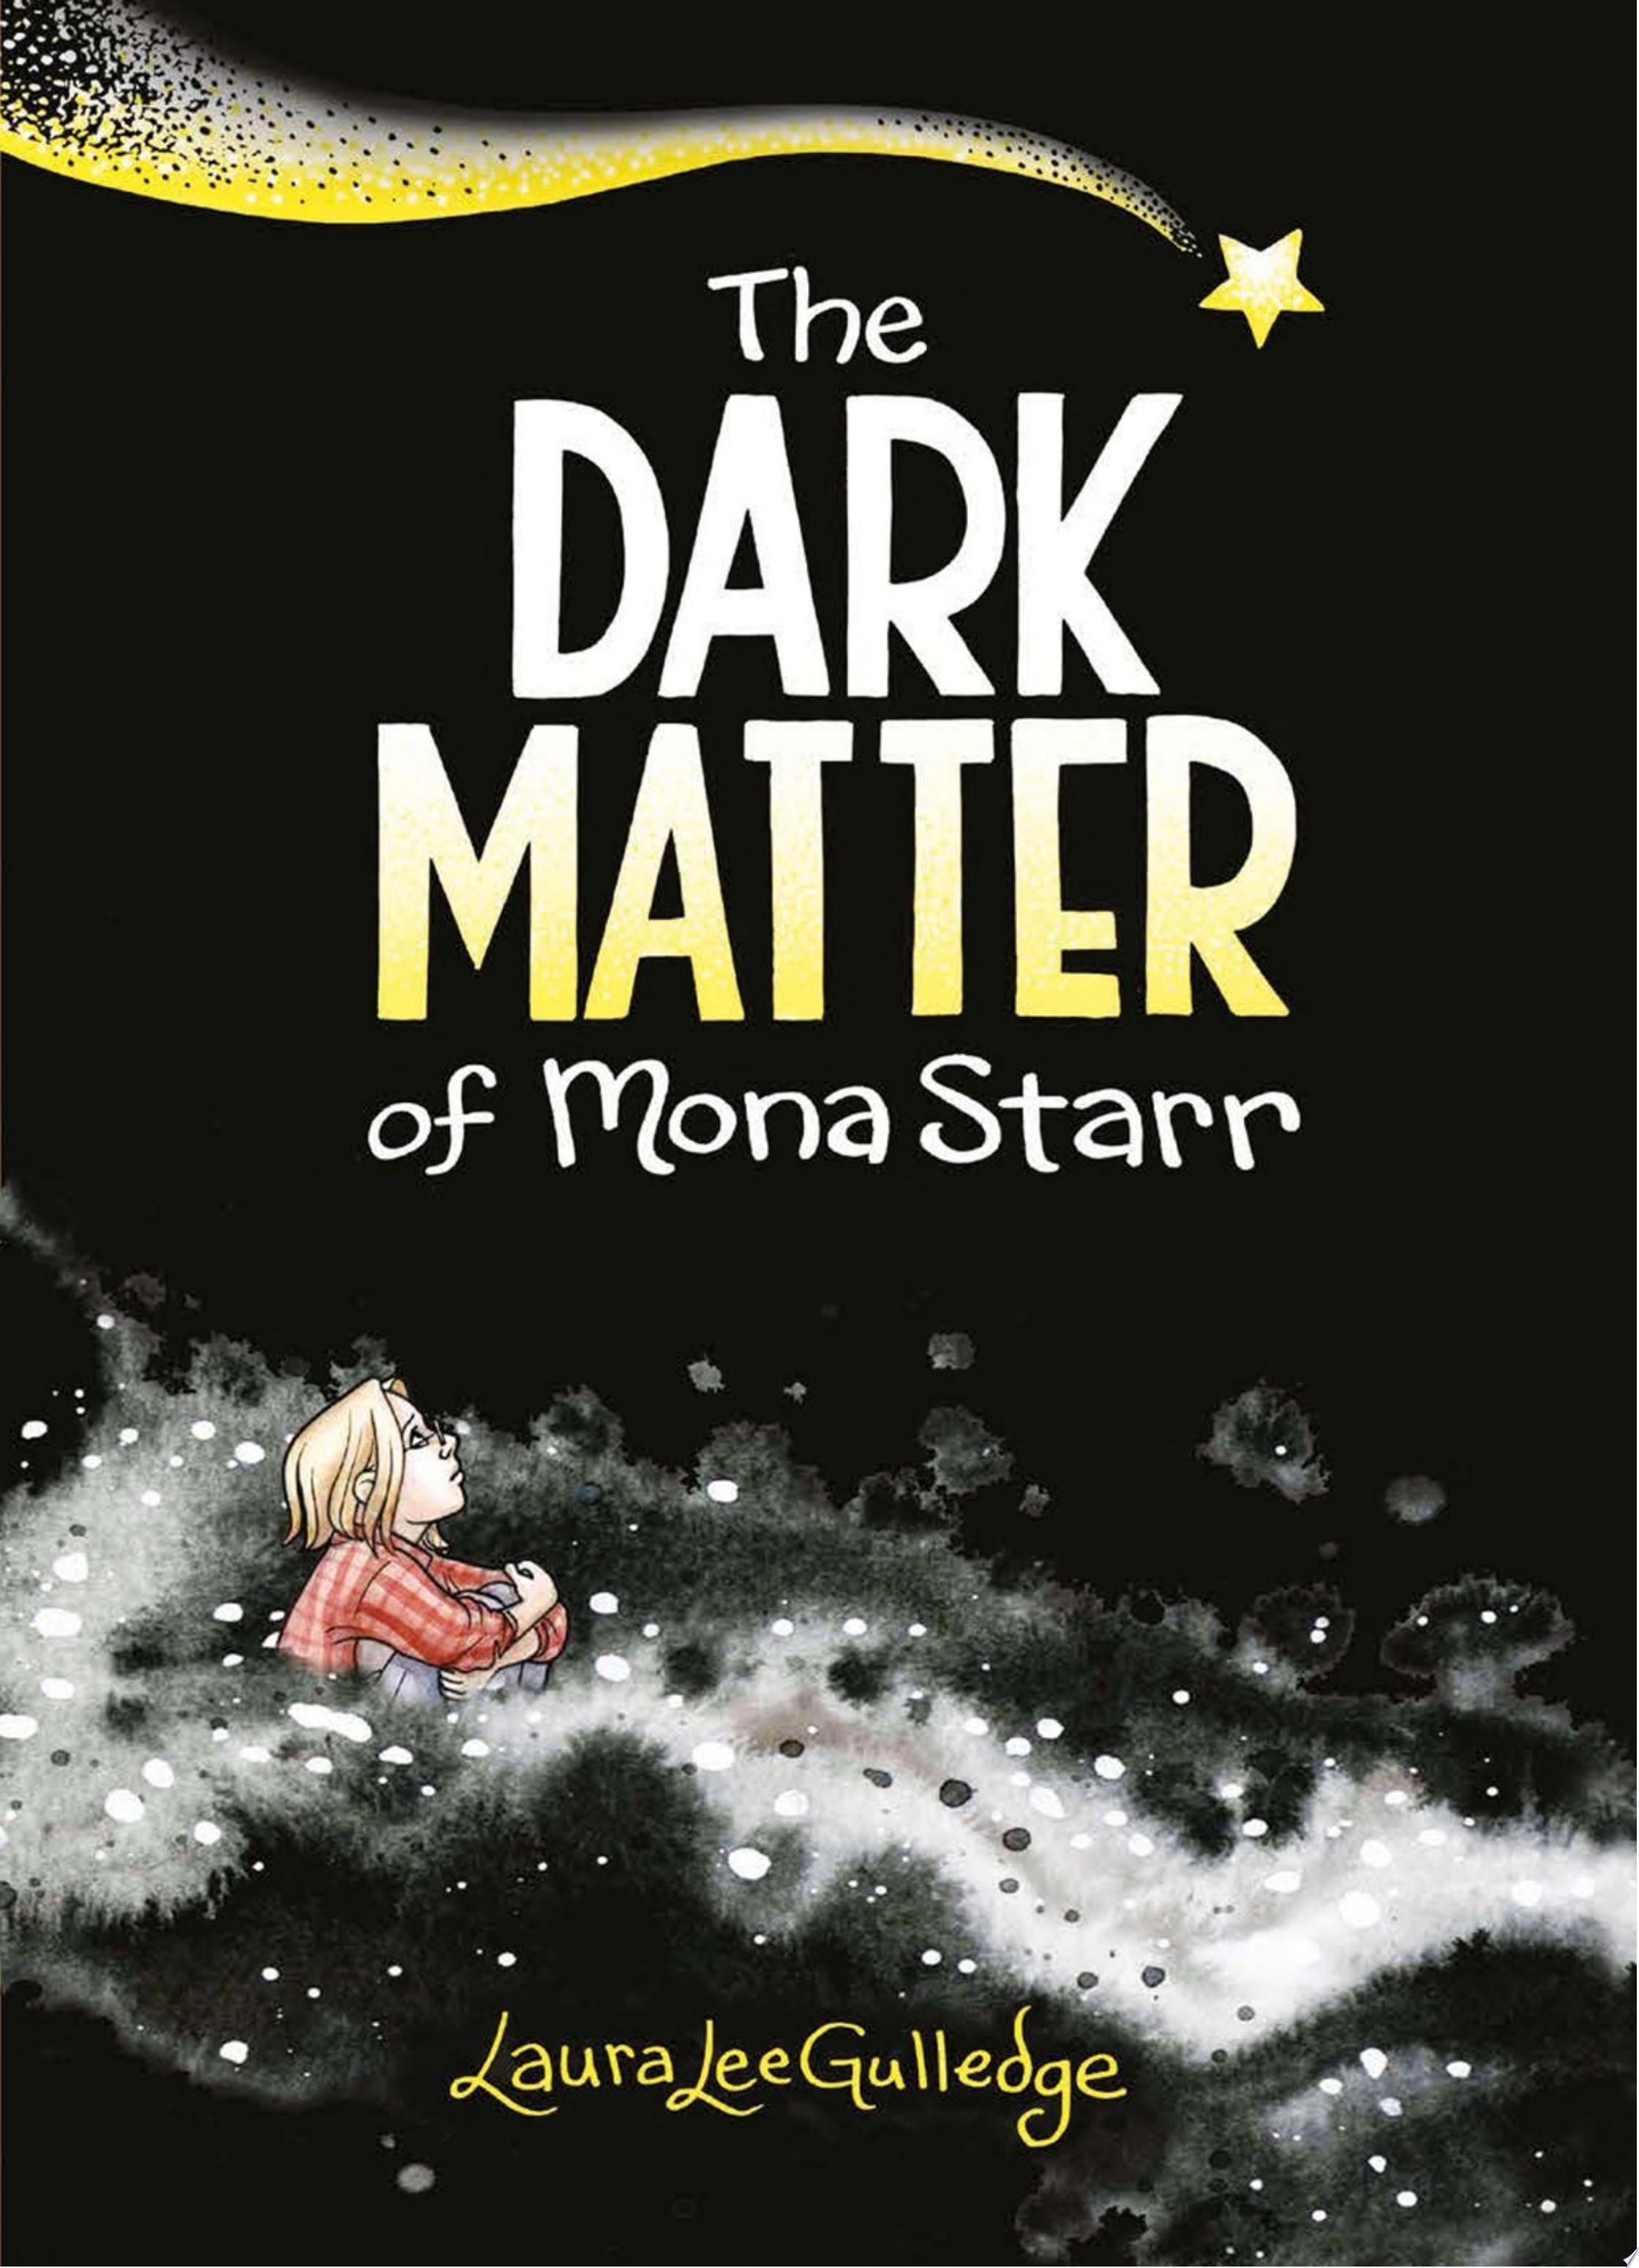 Image for "The Dark Matter of Mona Starr"